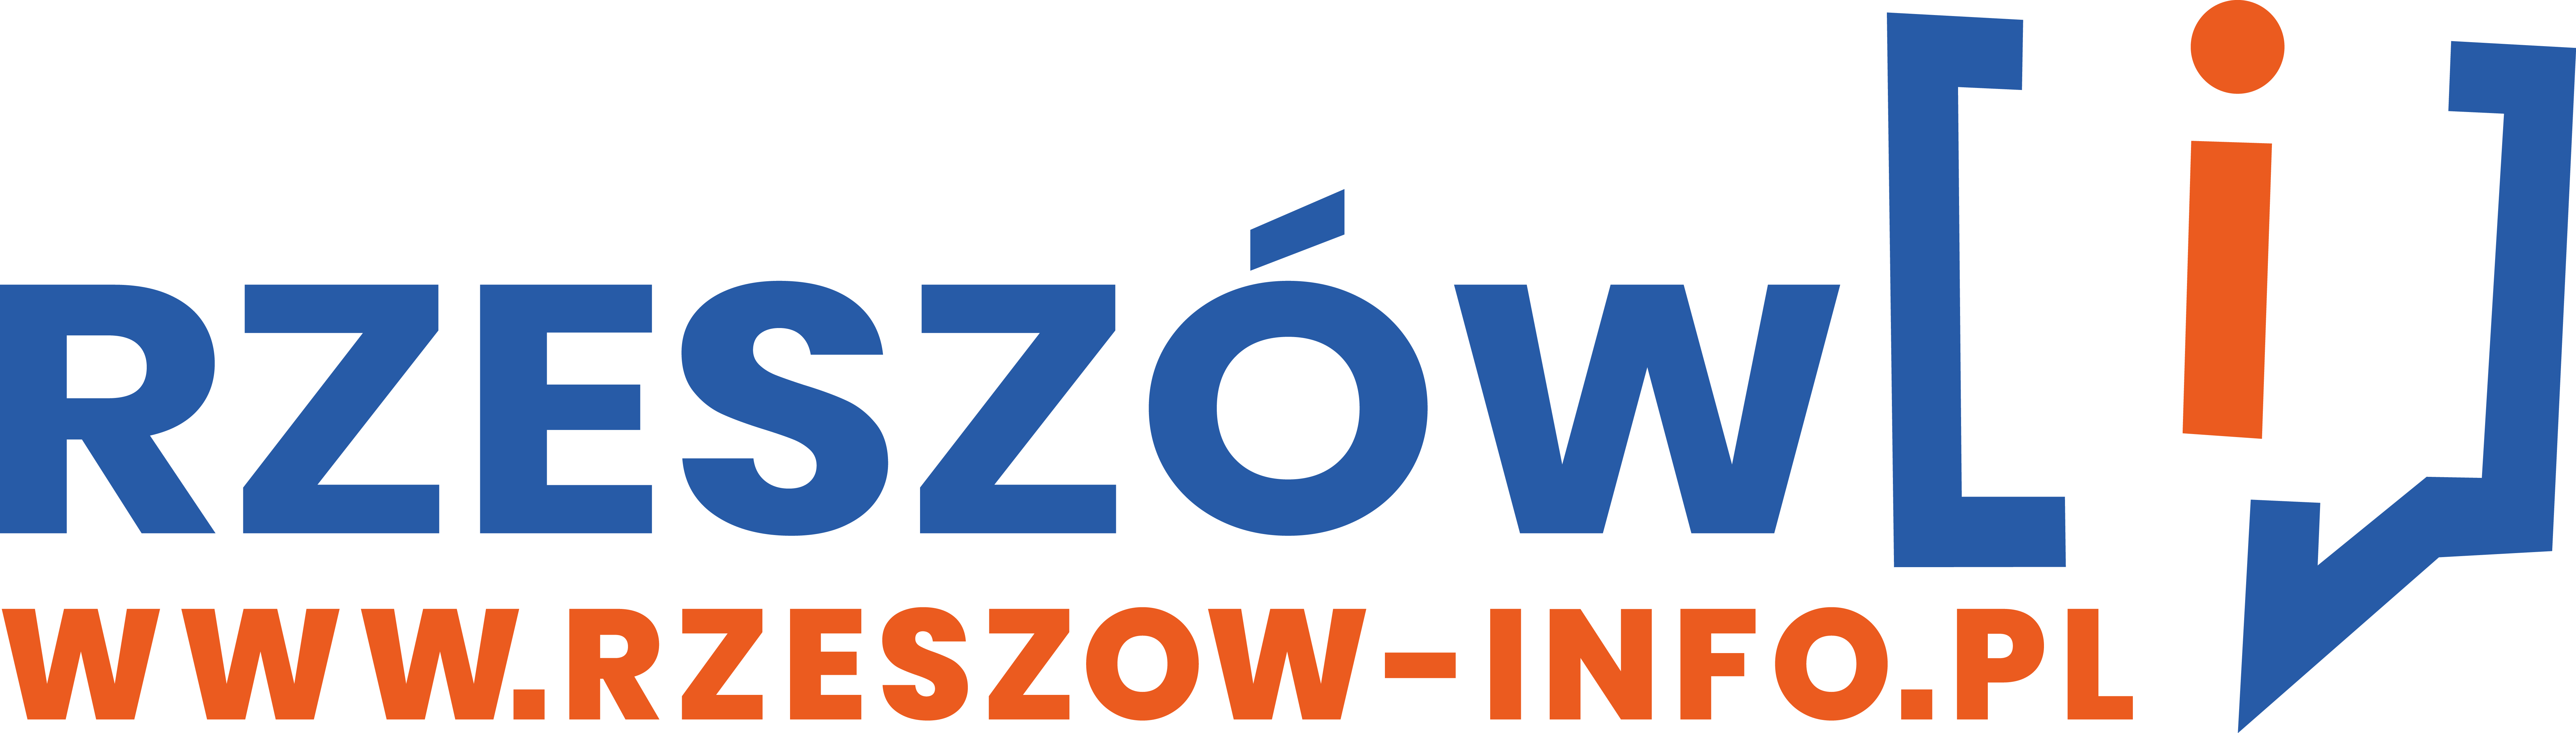 Rzeszow-info.pl 